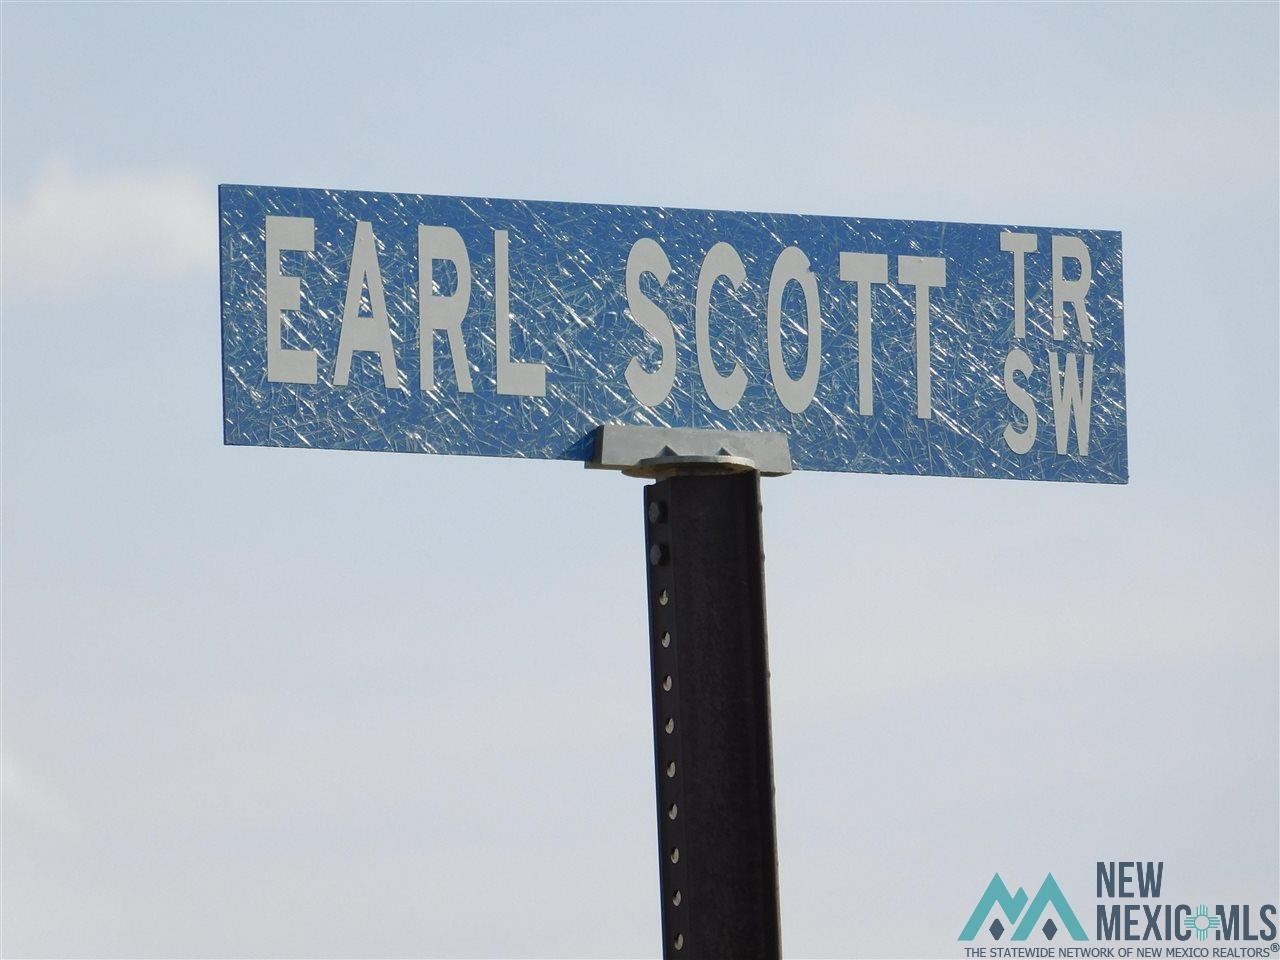 10. Earl Scott Trl SW